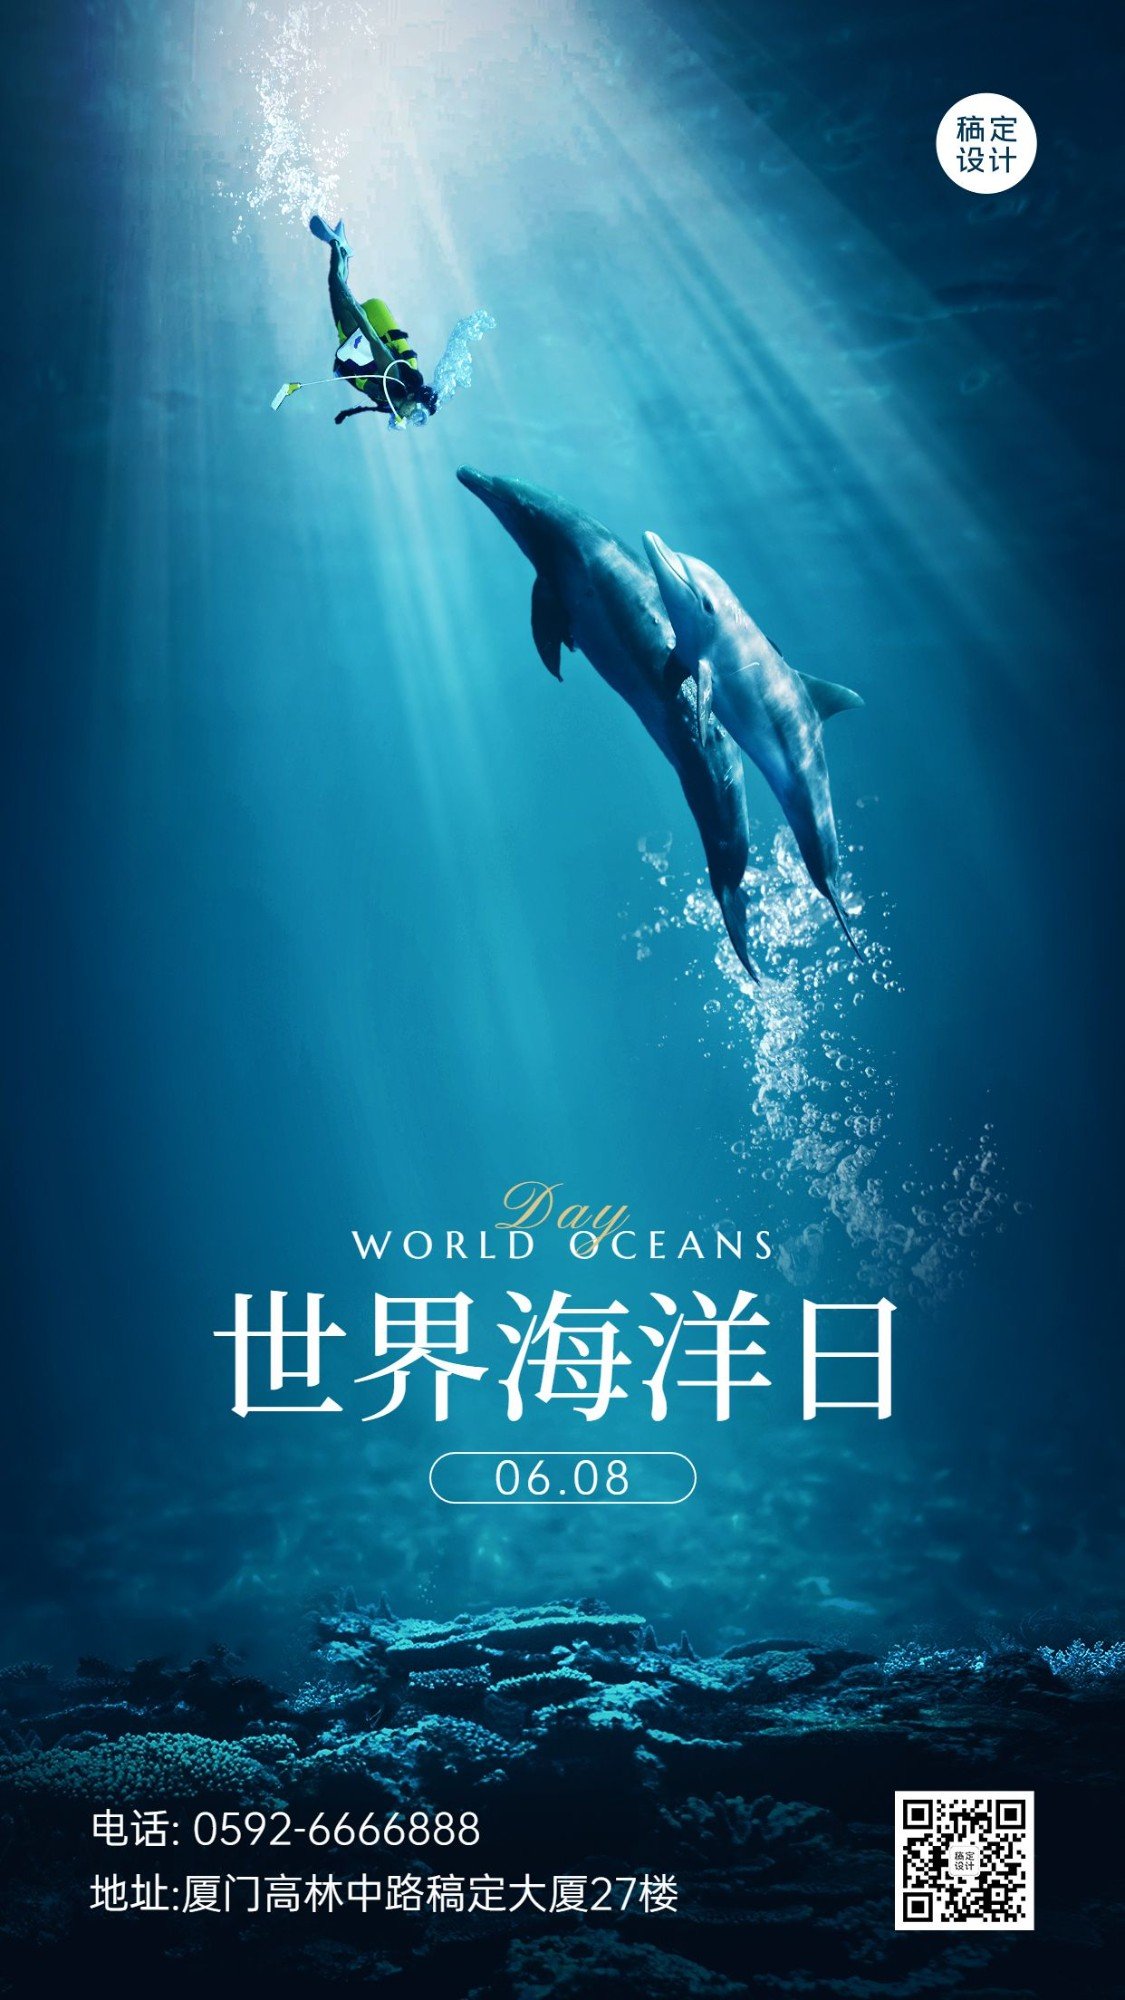 世界海洋日企业实景节日祝福手机海报